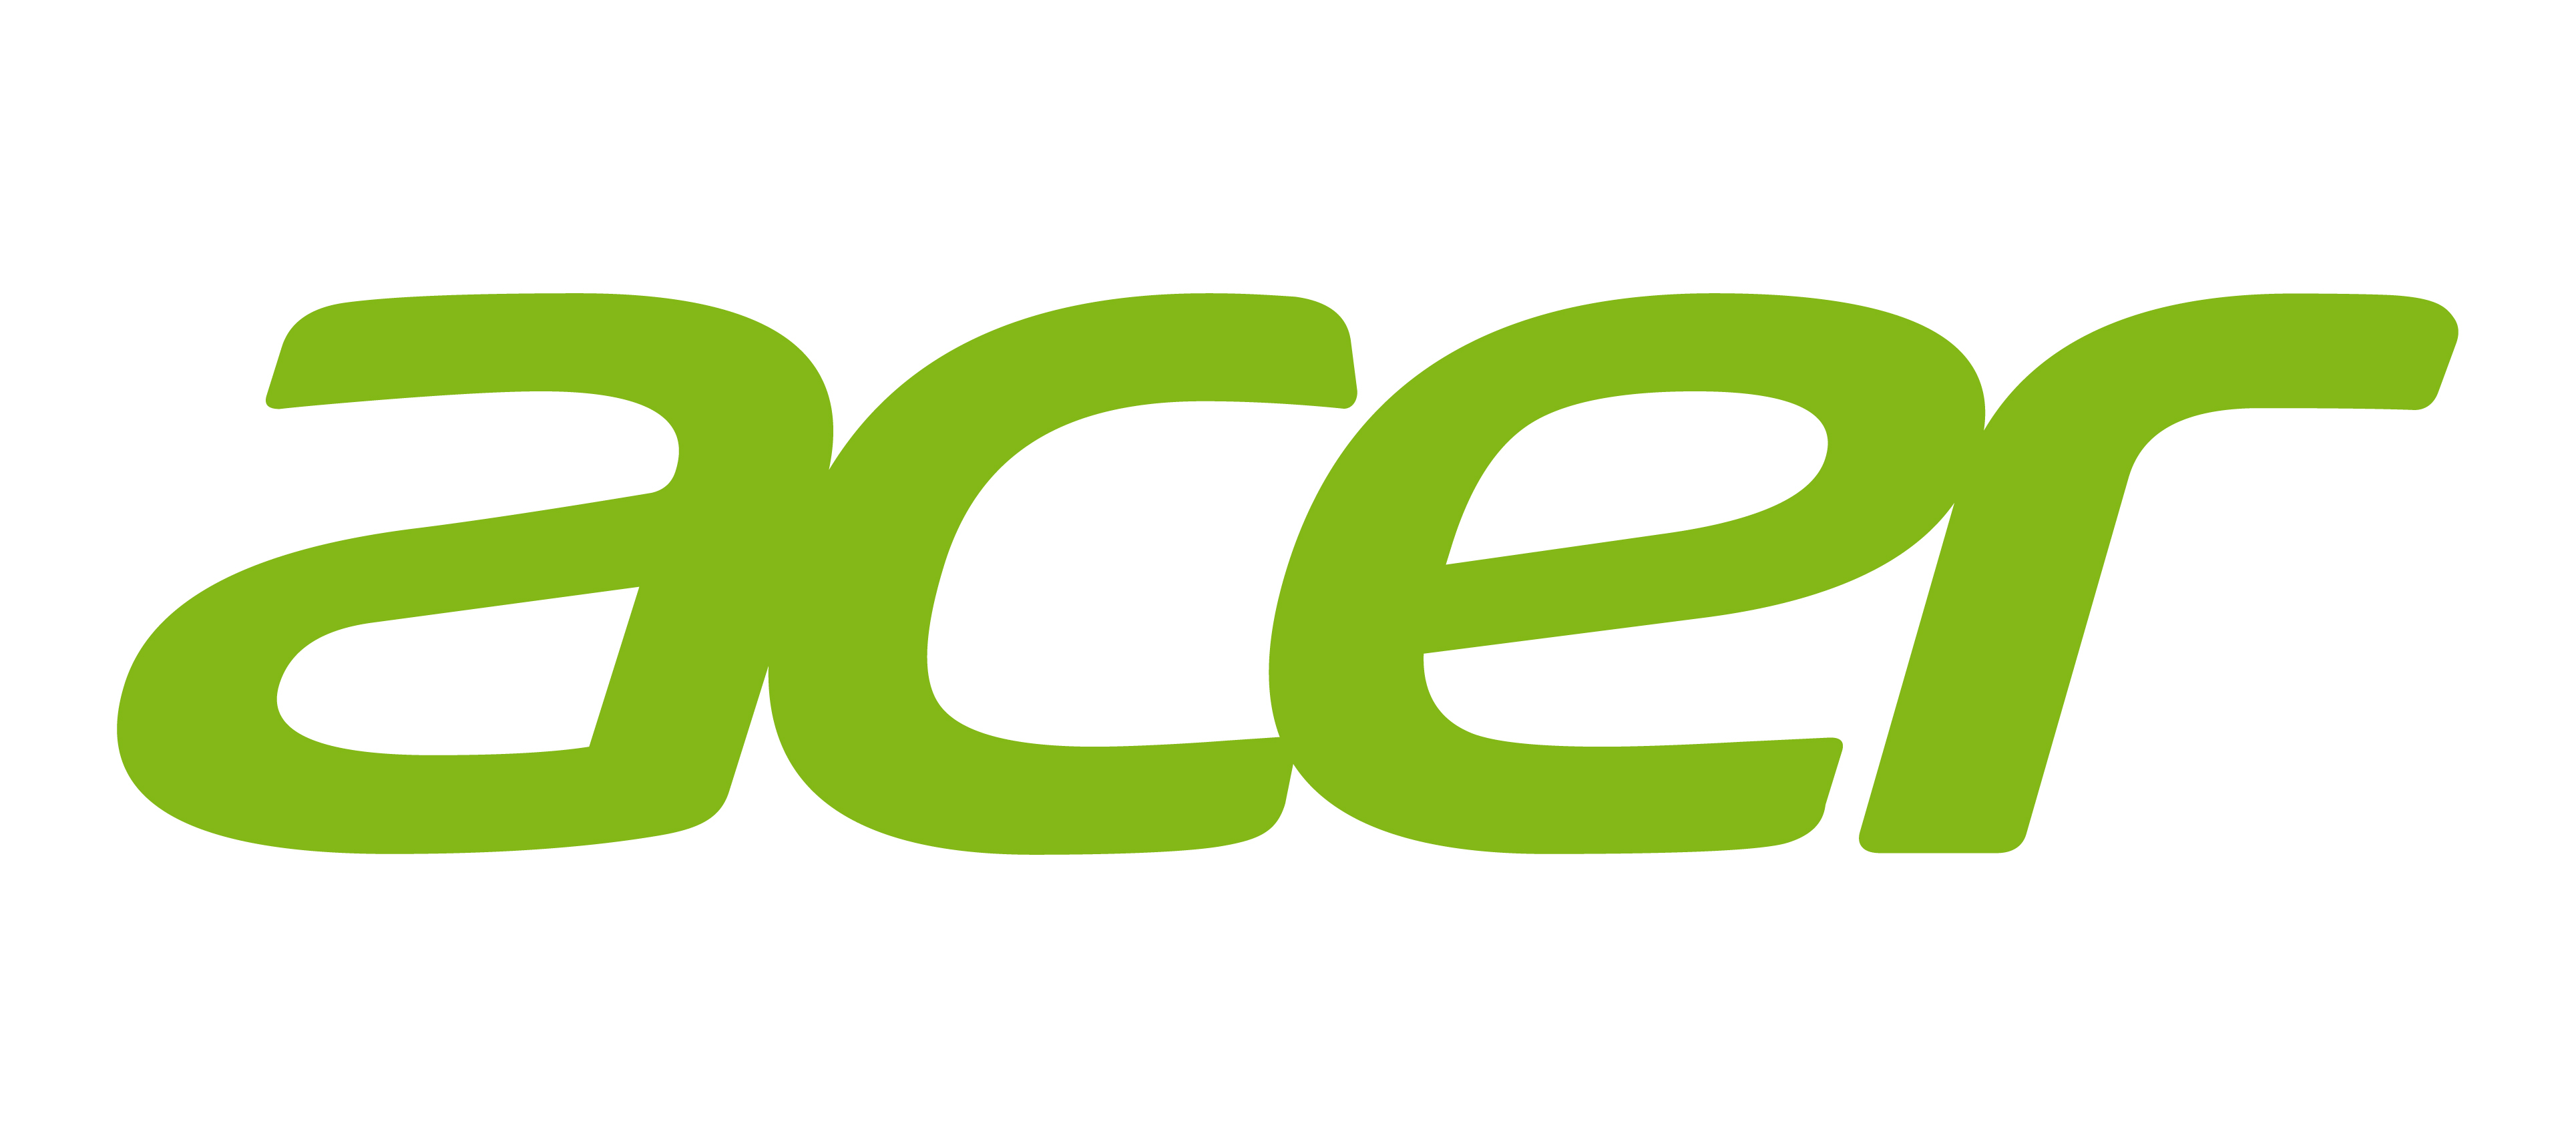 Acer-New-logo